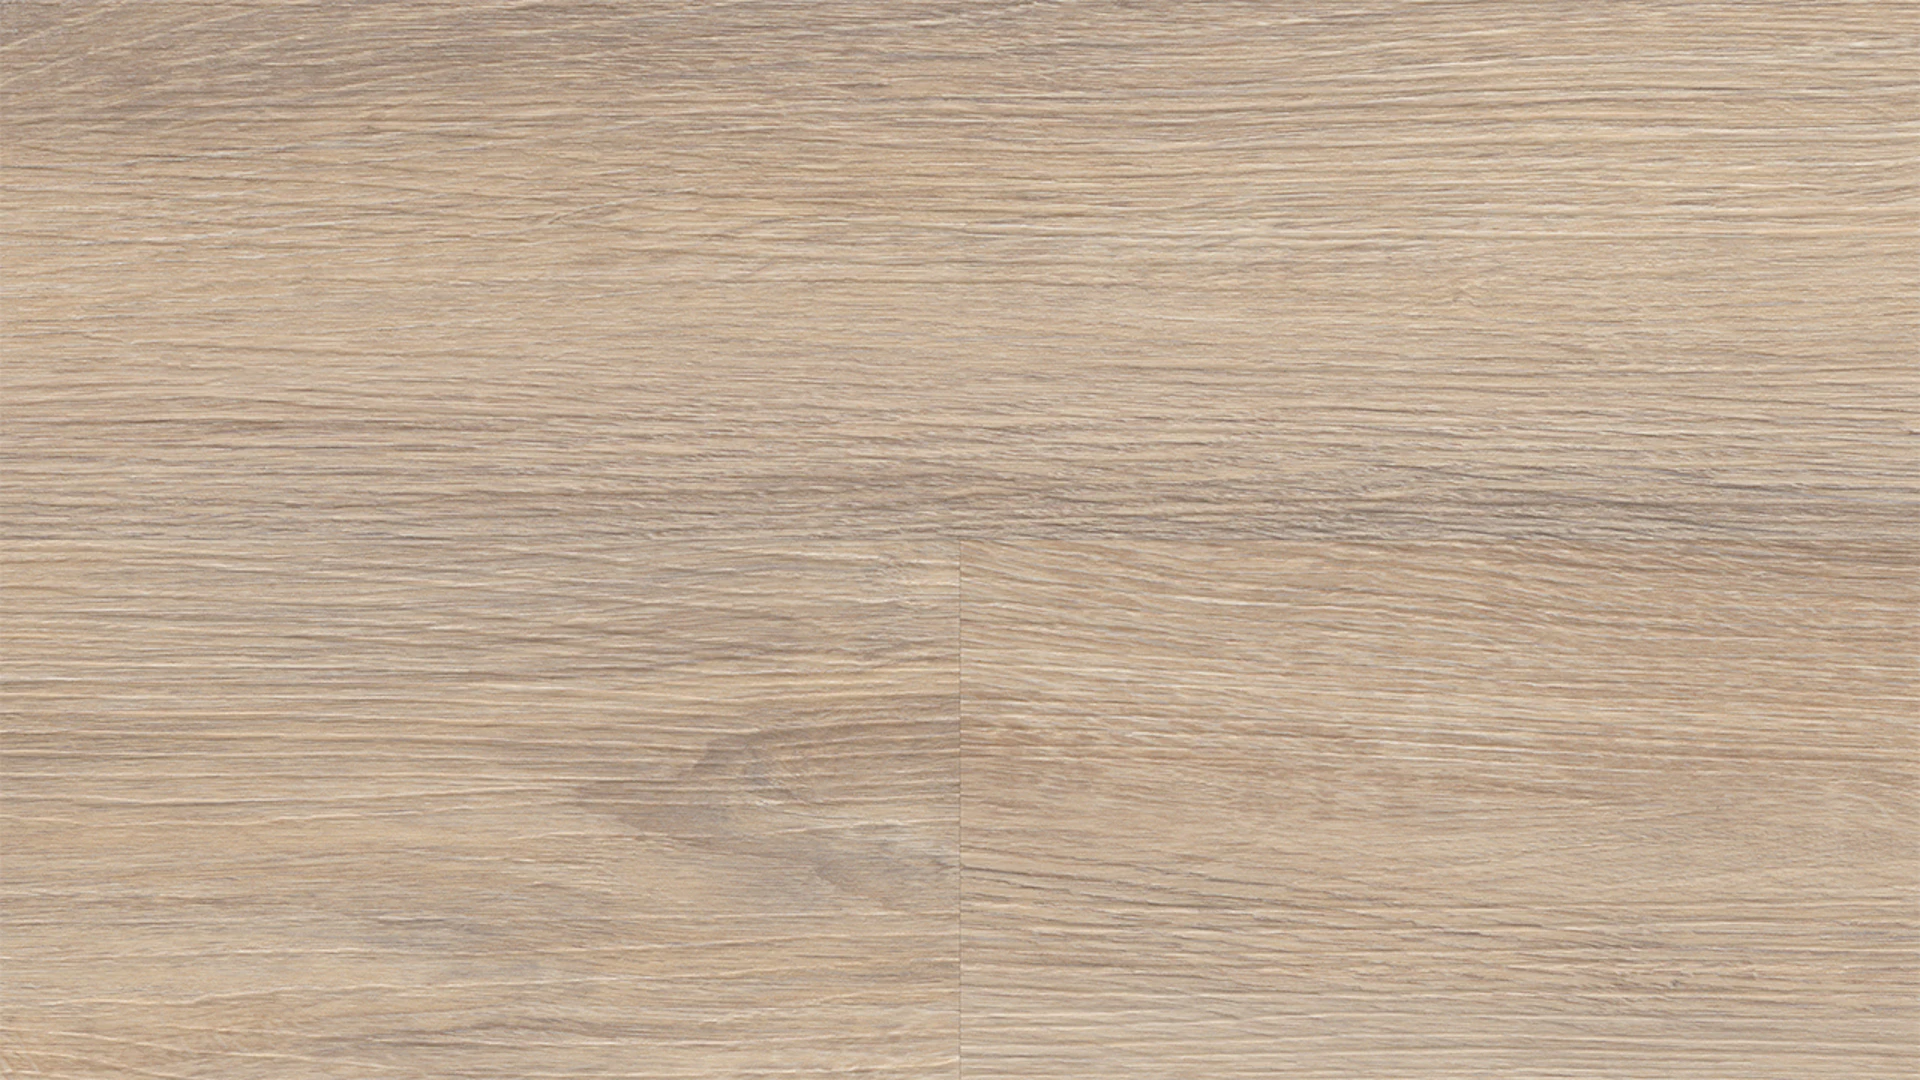 Wineo vinyle à coller - 400 wood L Vibrant Oak Beige | Grain synchronisé (DB282WL)